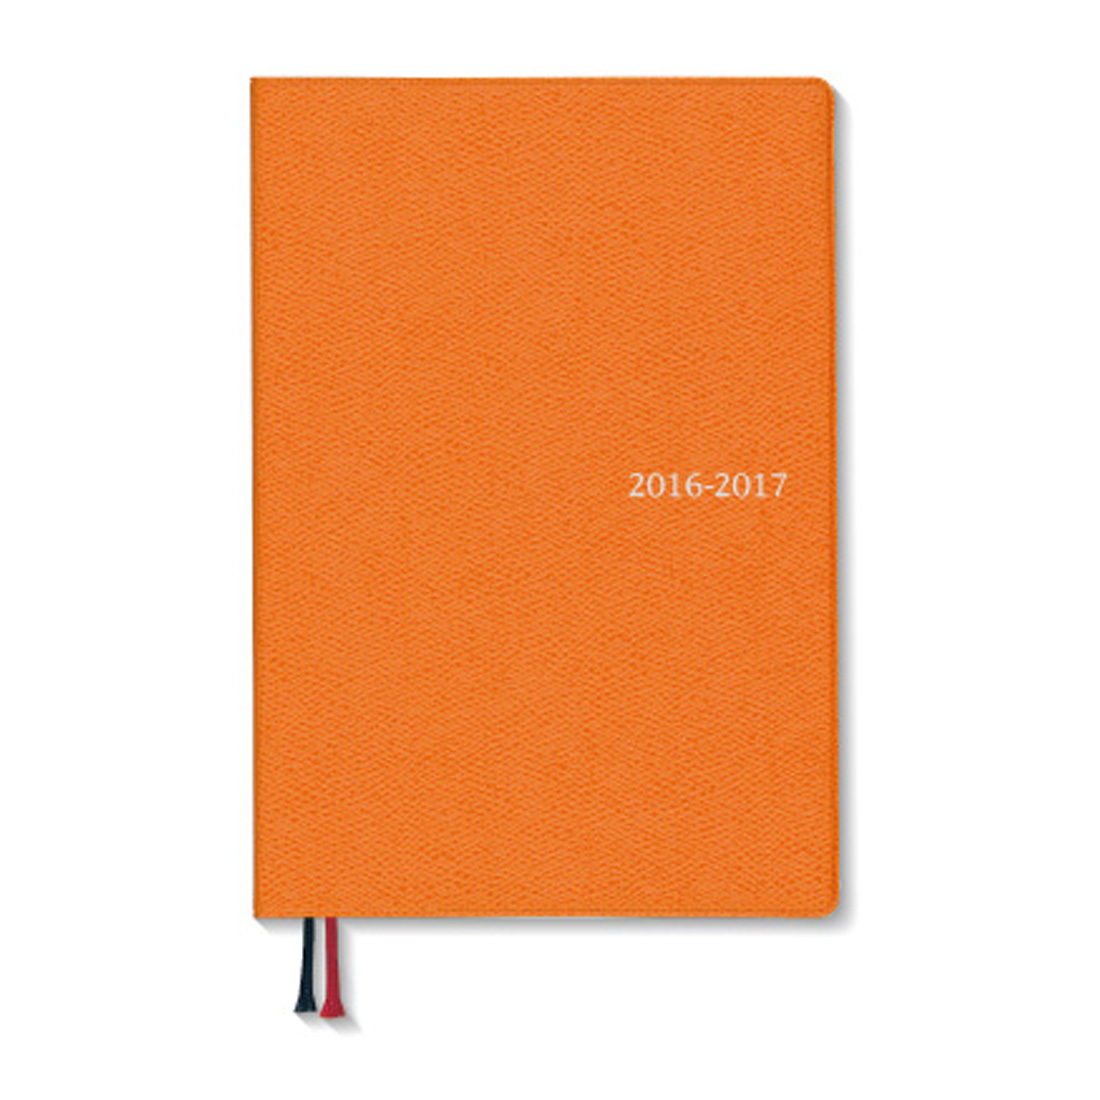 16 17 4月始まり Appoint デスク 1週間バーチカル B6 オレンジ E1165 22年版手帳 手帳 ダイアリー のダイゴーオンラインショップ